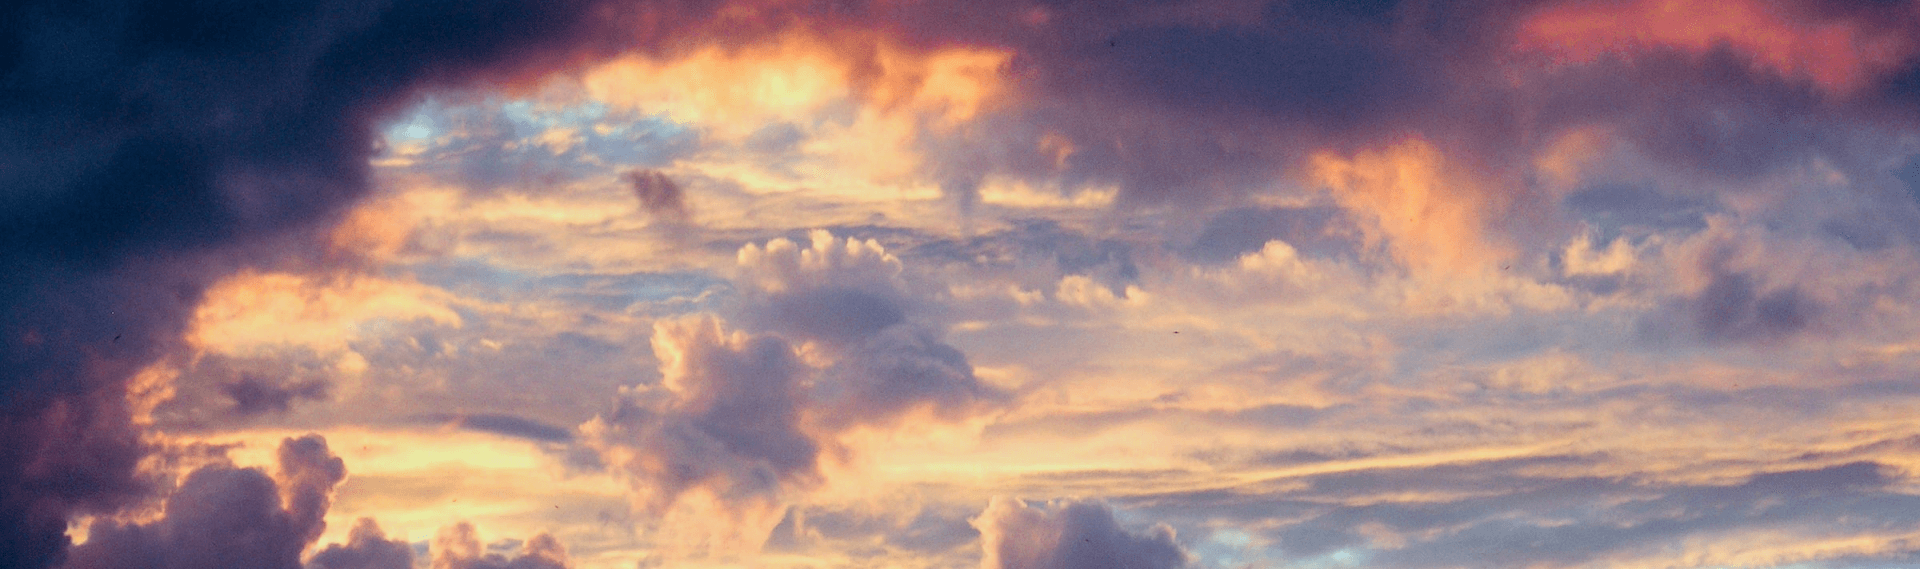 Clouds_panorama